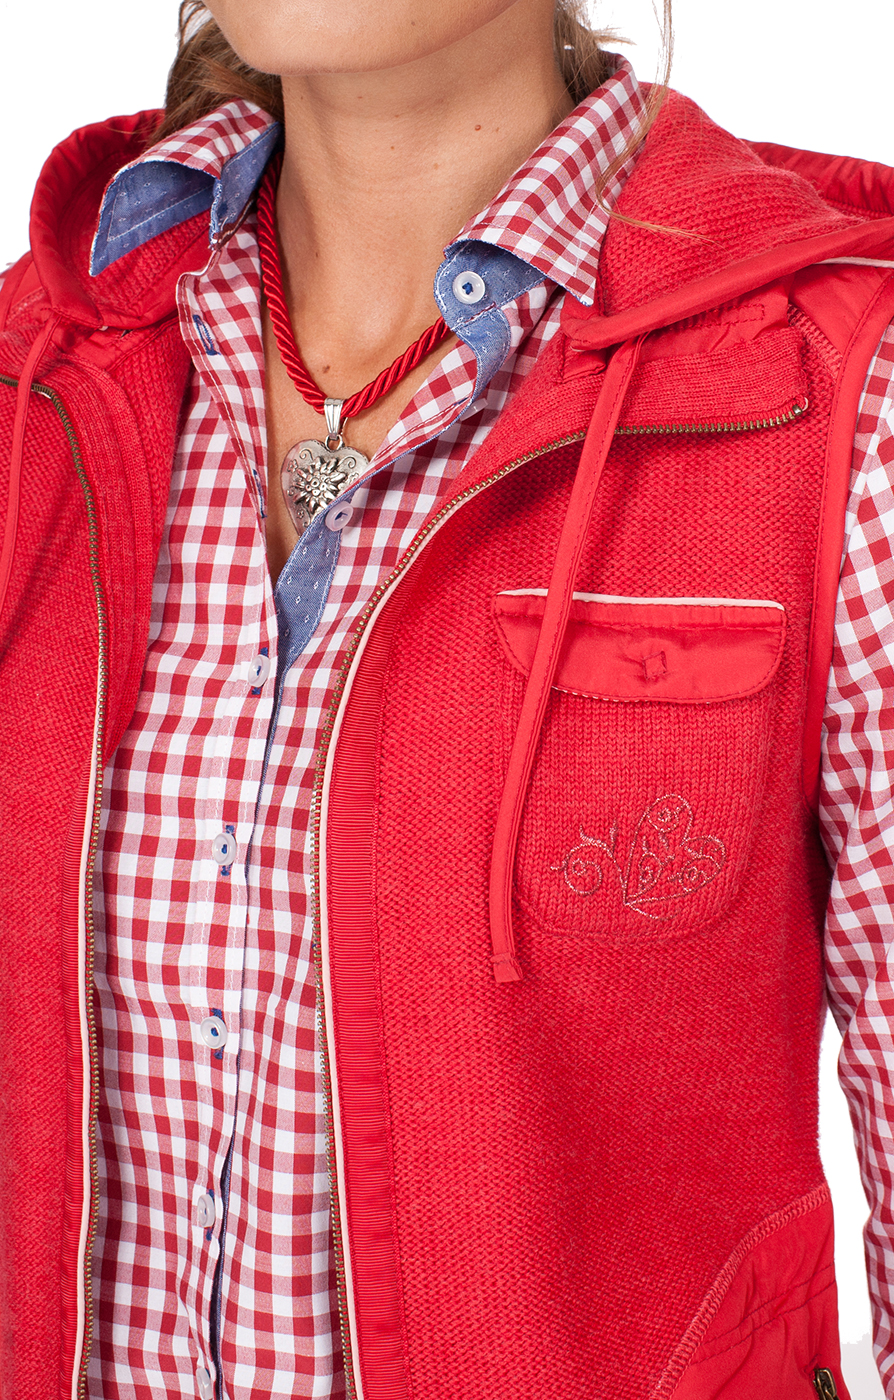 weitere Bilder von Traditional waistcoat Flintbeck red pink